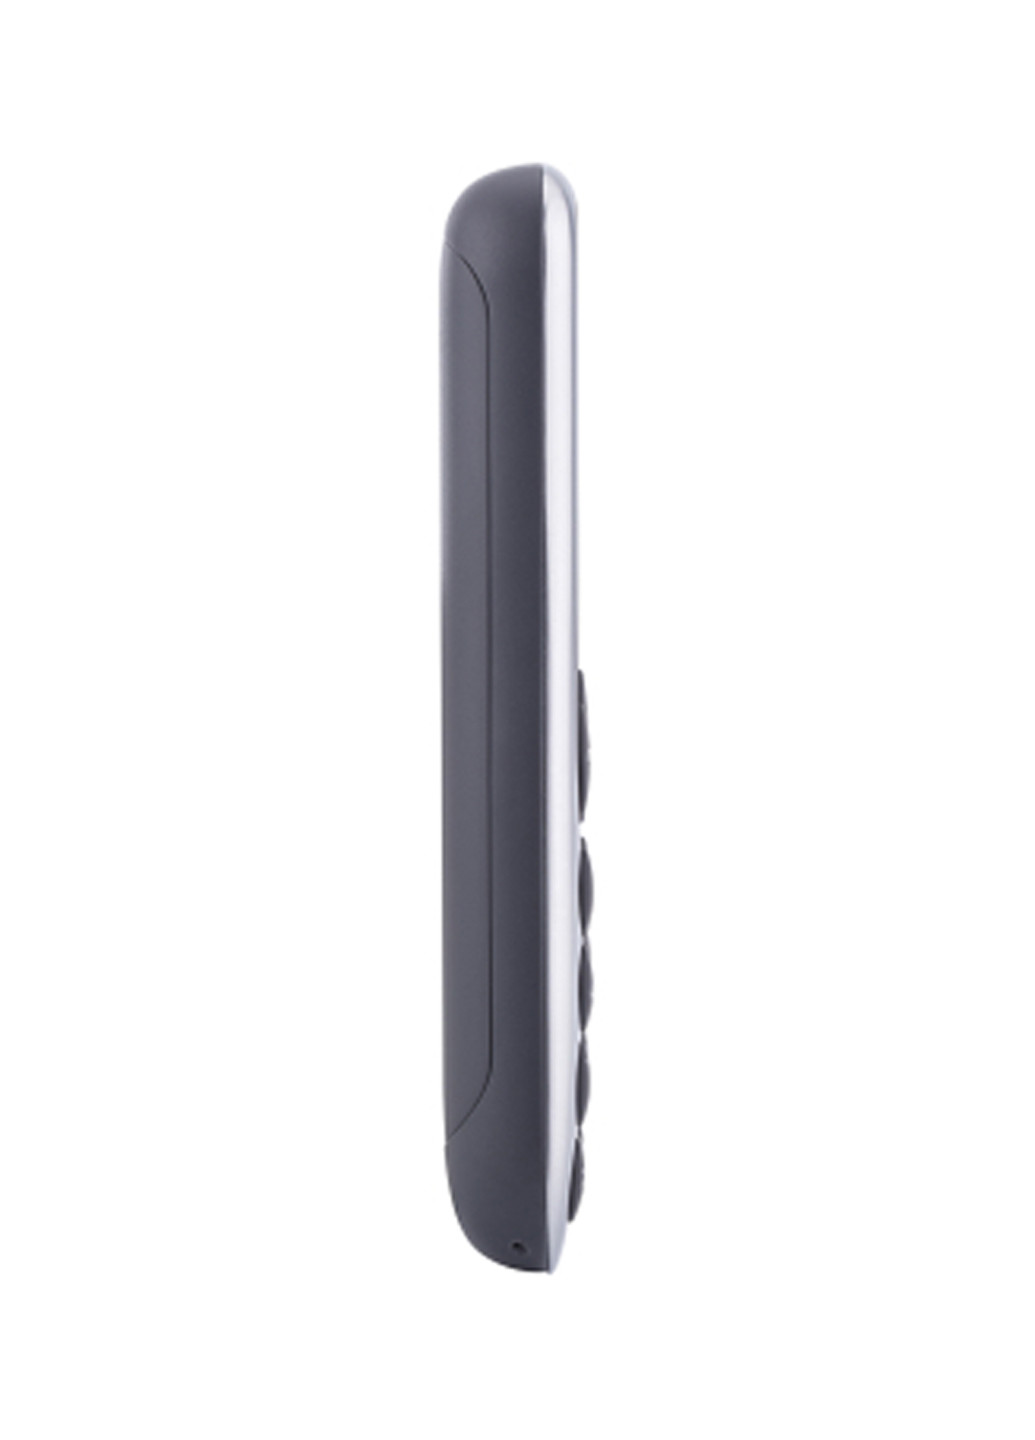 Мобильный телефон Nomi i177 metal grey (134344435)